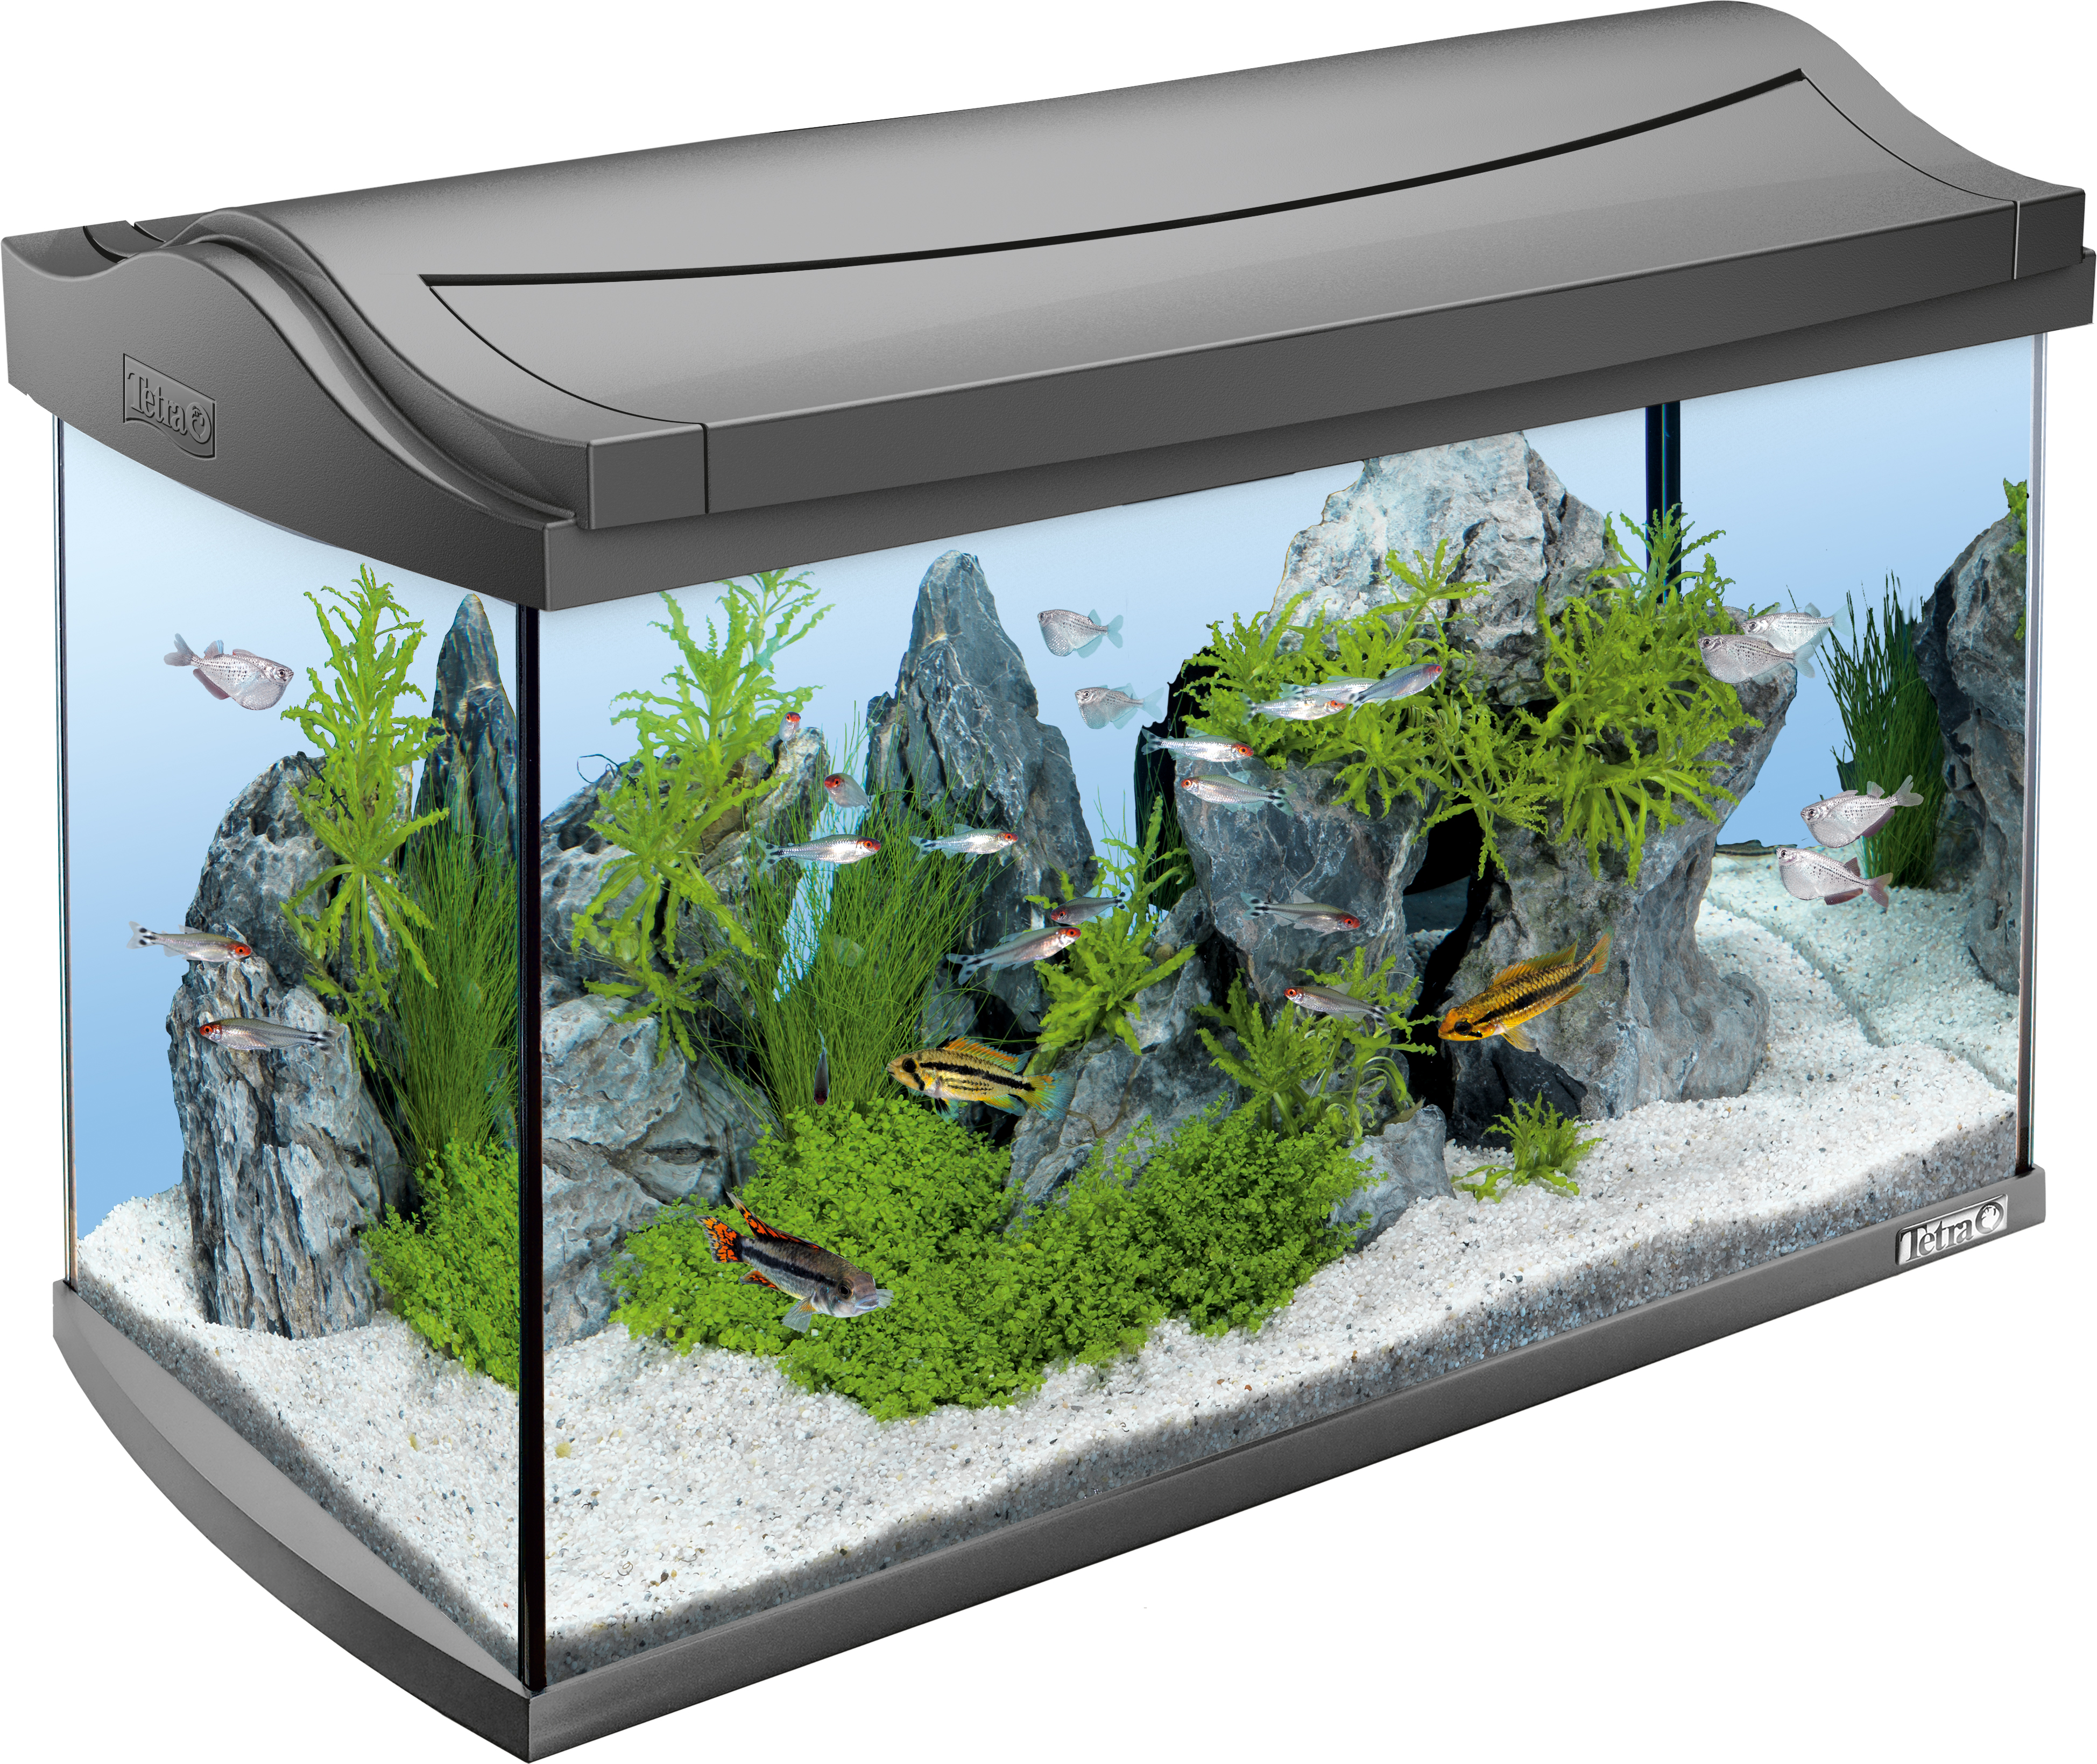 Tetra AquaArt Aquarium LED 60L - Olibetta Online Shop